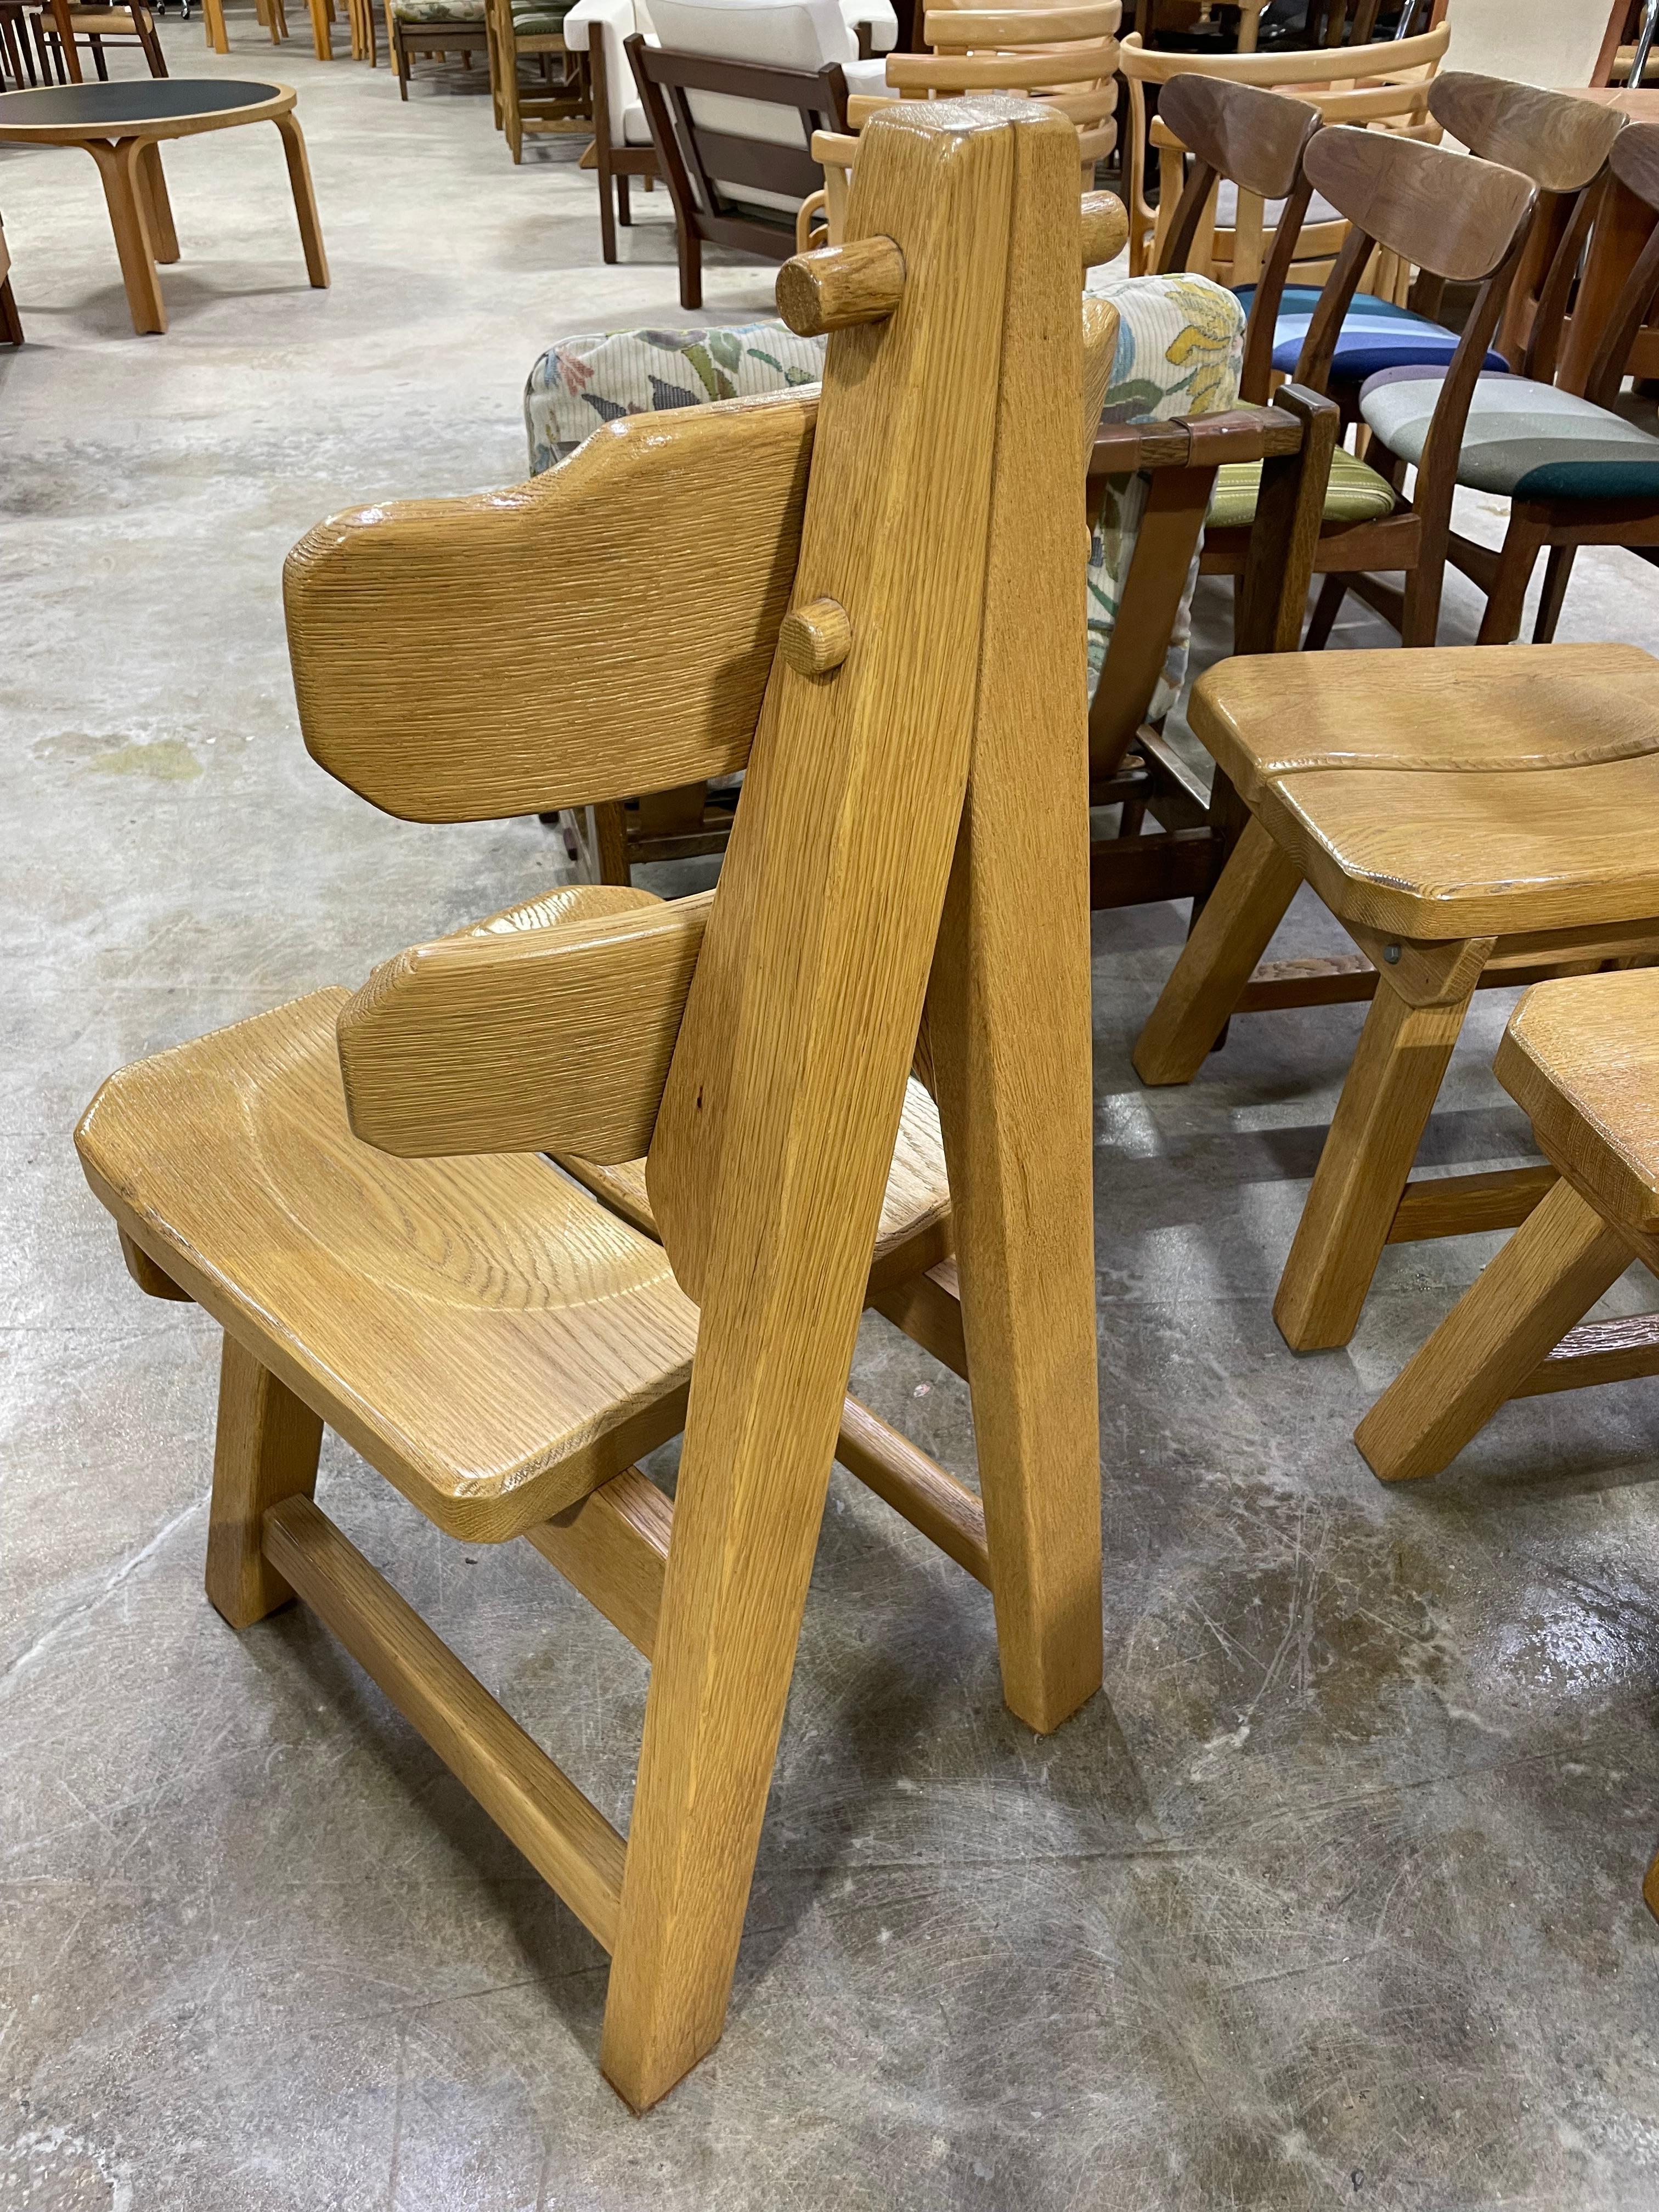 Seltener Satz Esszimmerstühle aus Eiche, hergestellt in Spanien. Geometrisches Design im Brutalismus. Superstabile Konstruktion. Freiliegende Fugen.